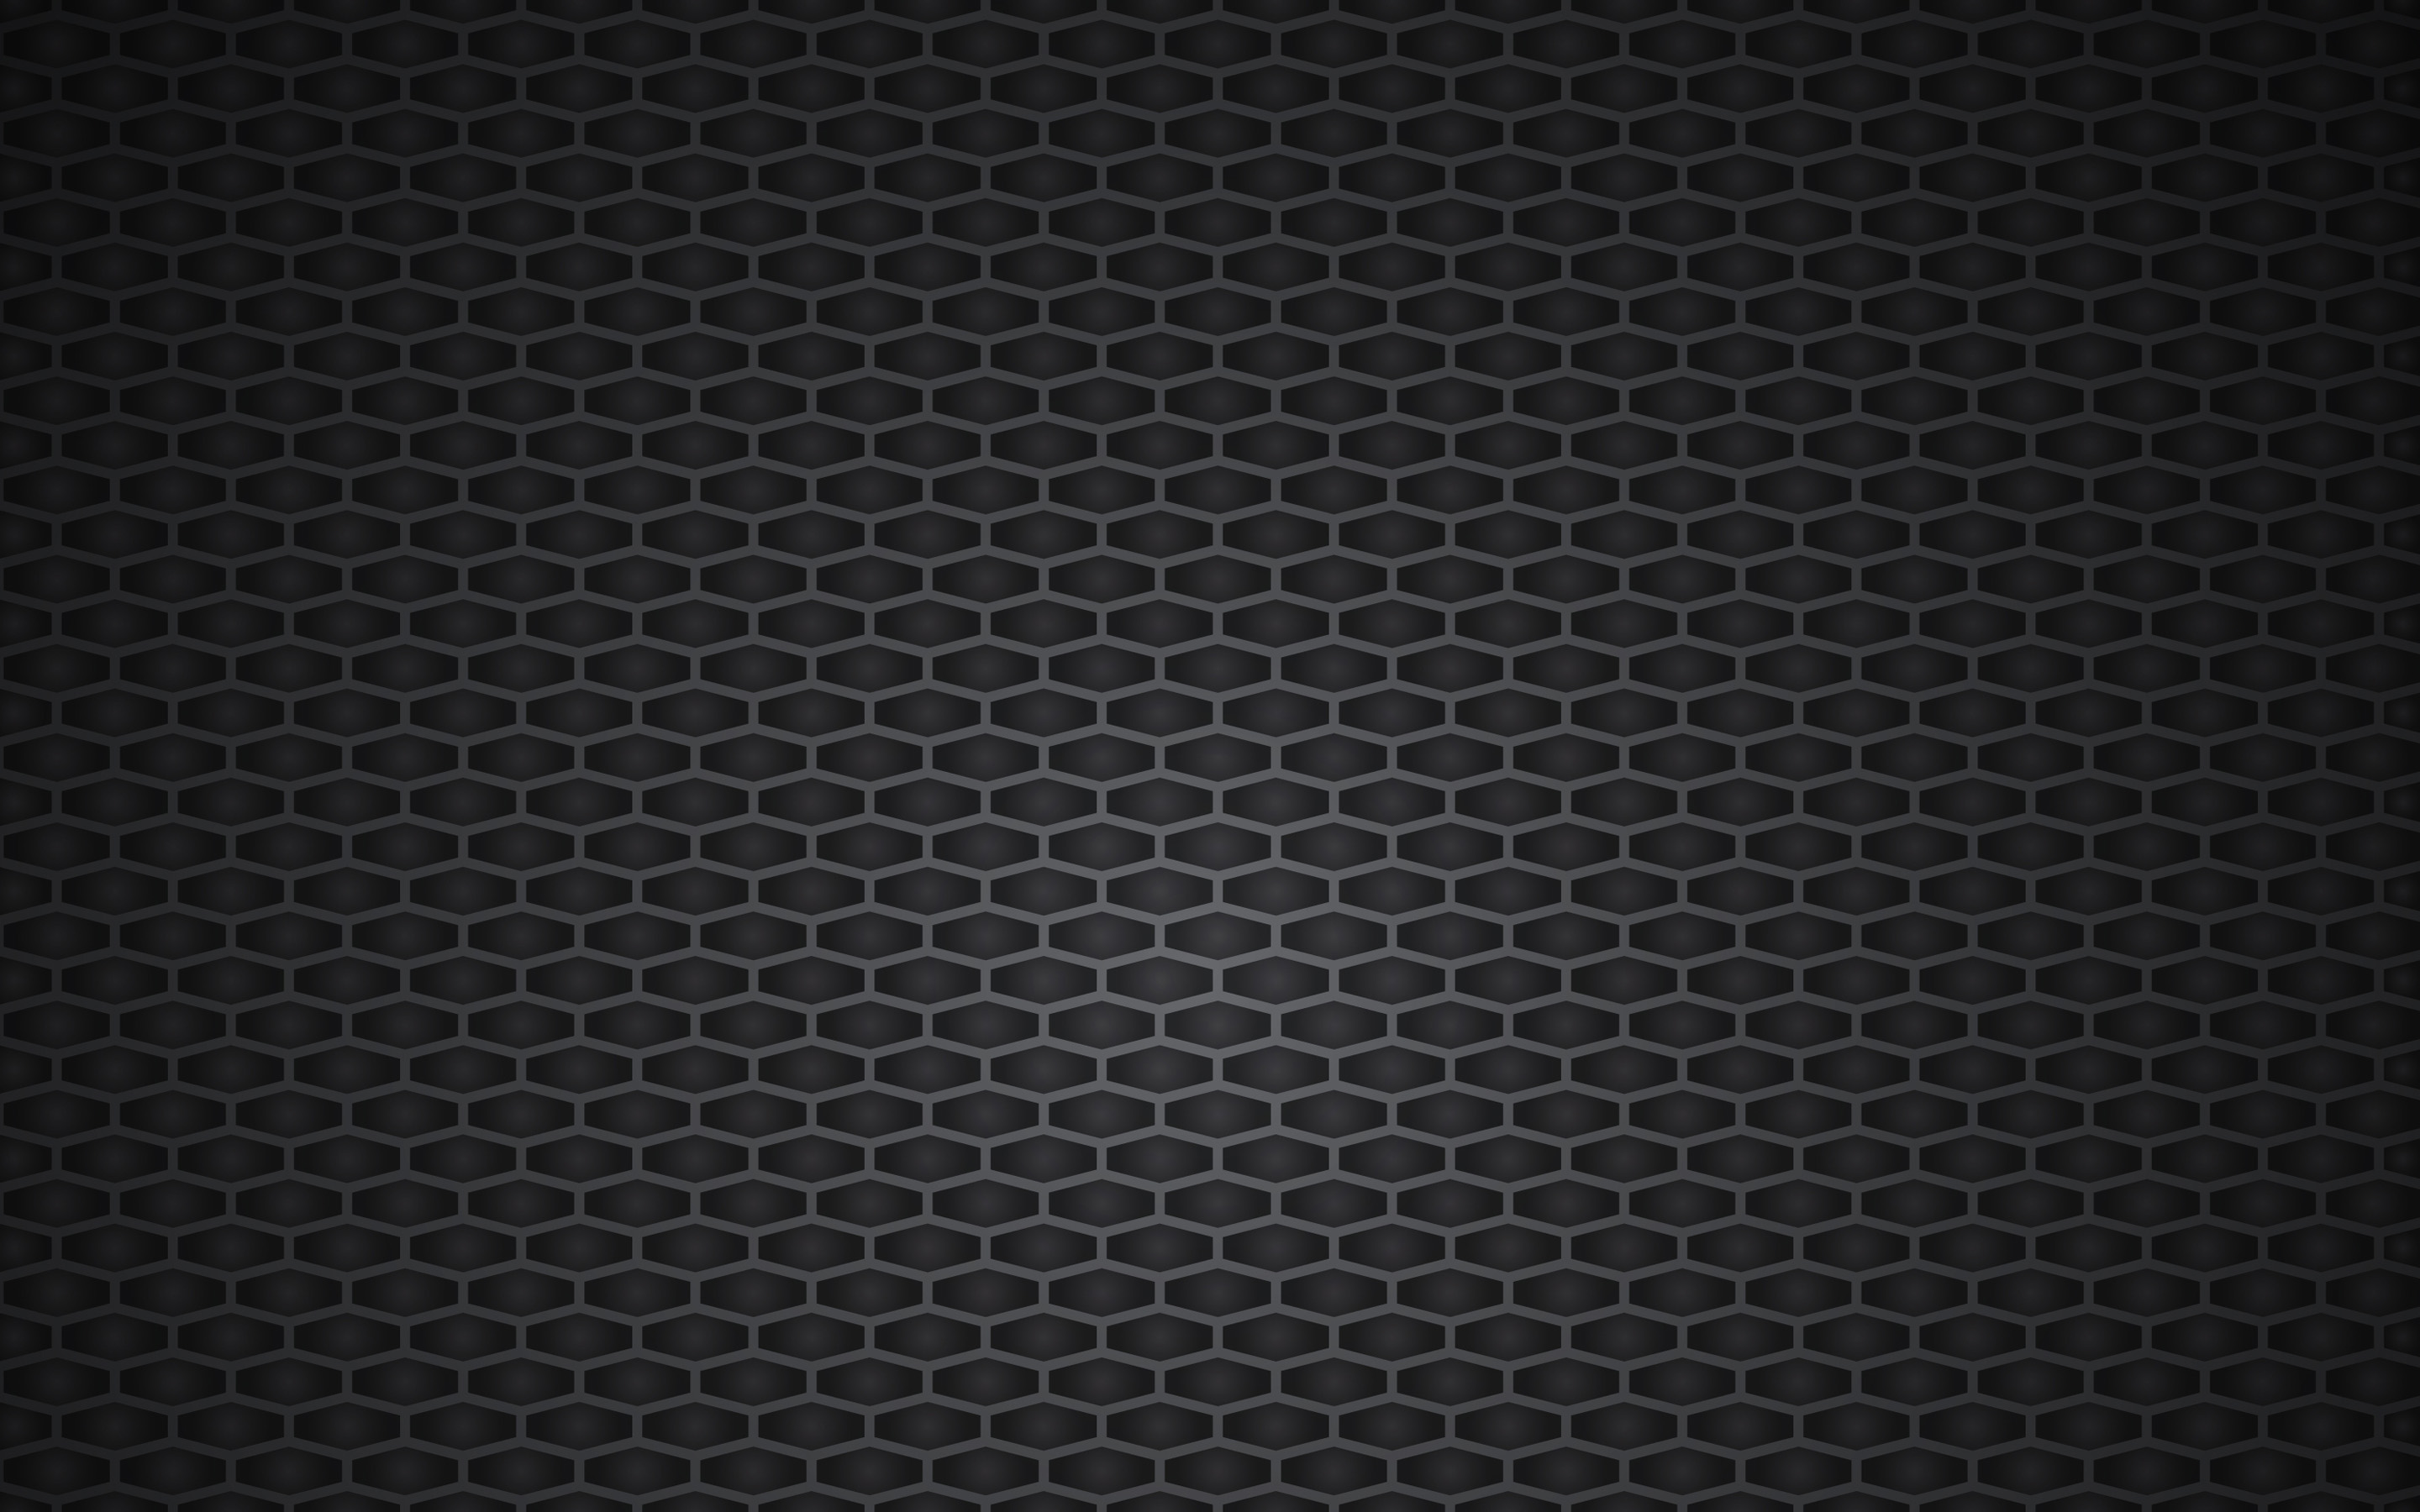 Grid Sample  Grid wallpaper Black and white tiles Wallpaper